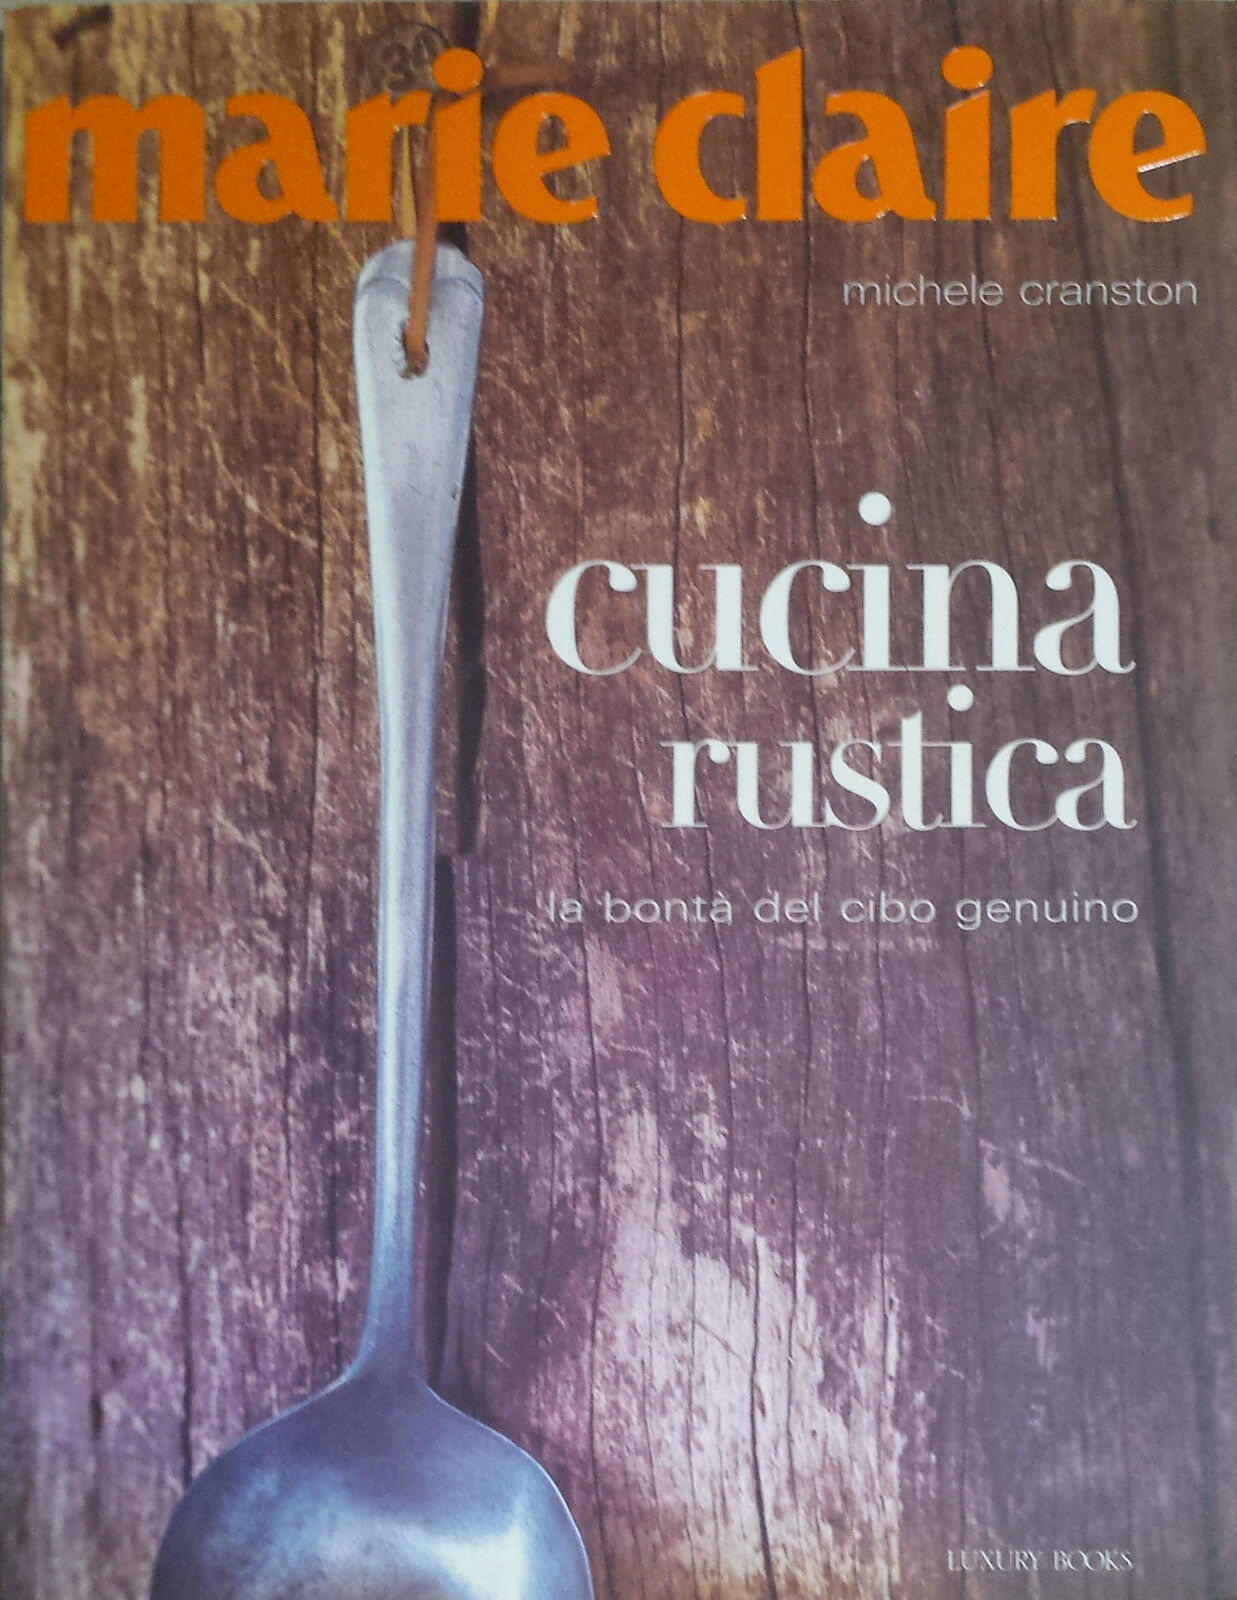 Marie Claire Cucina rustica - Michele Cranston - Luxury Books - 2007 - G libro usato